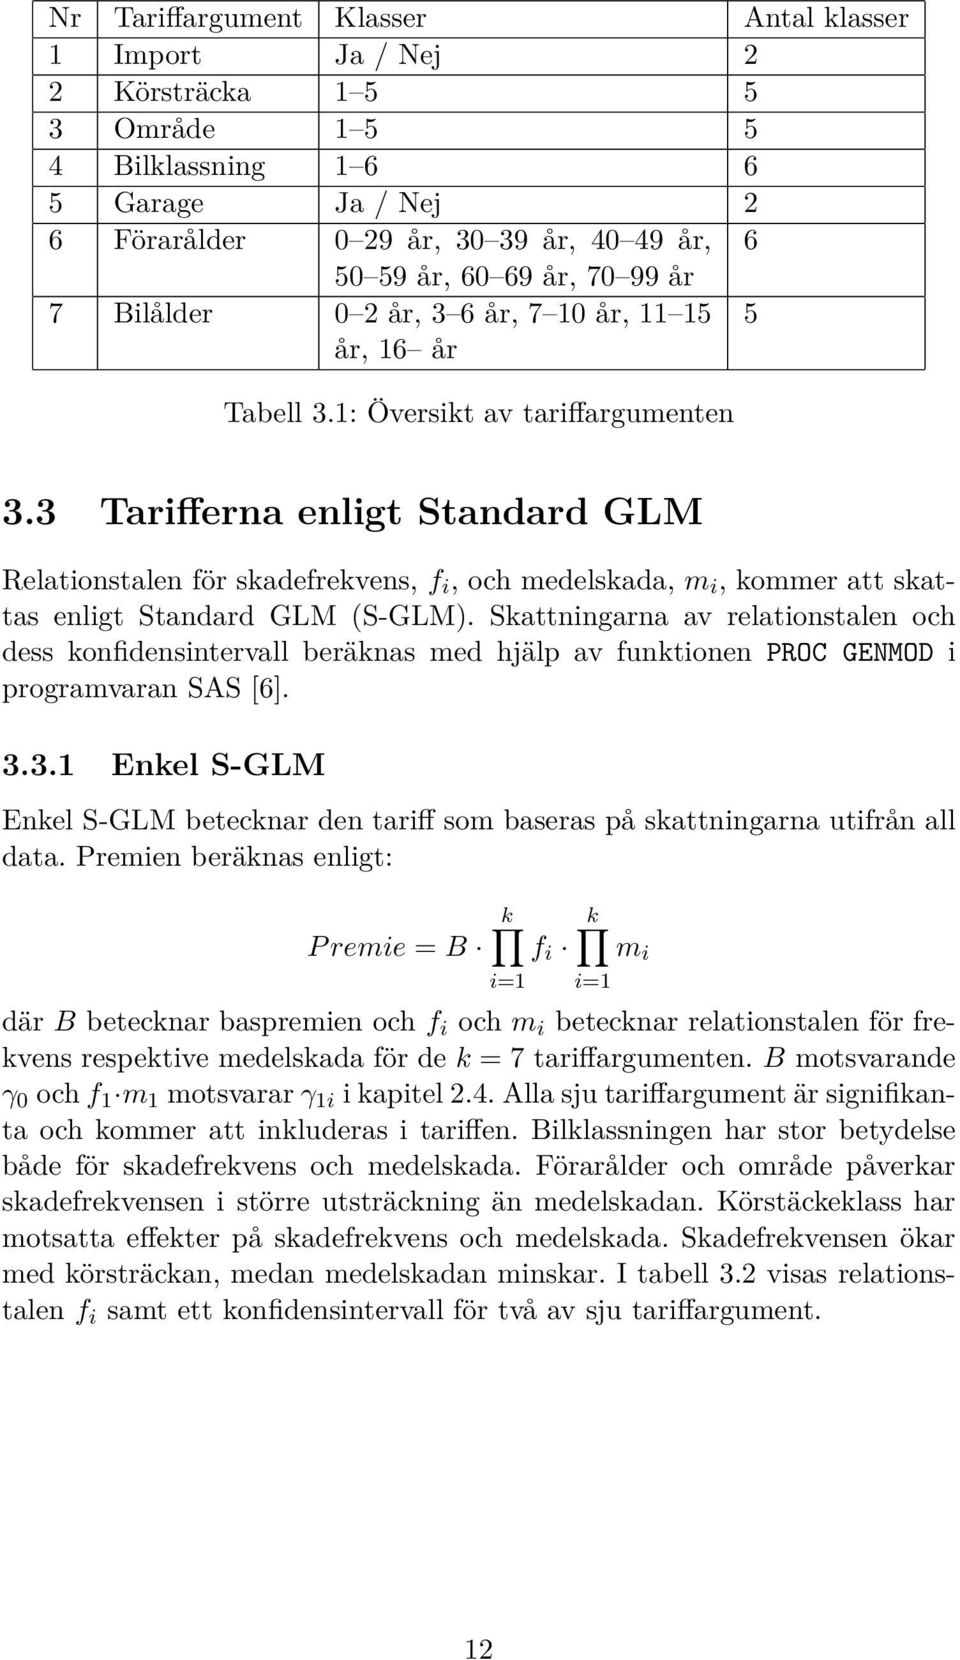 3 Tarifferna enligt Standard GLM Relationstalen för skadefrekvens, f i, och medelskada, m i, kommer att skattas enligt Standard GLM (S-GLM).